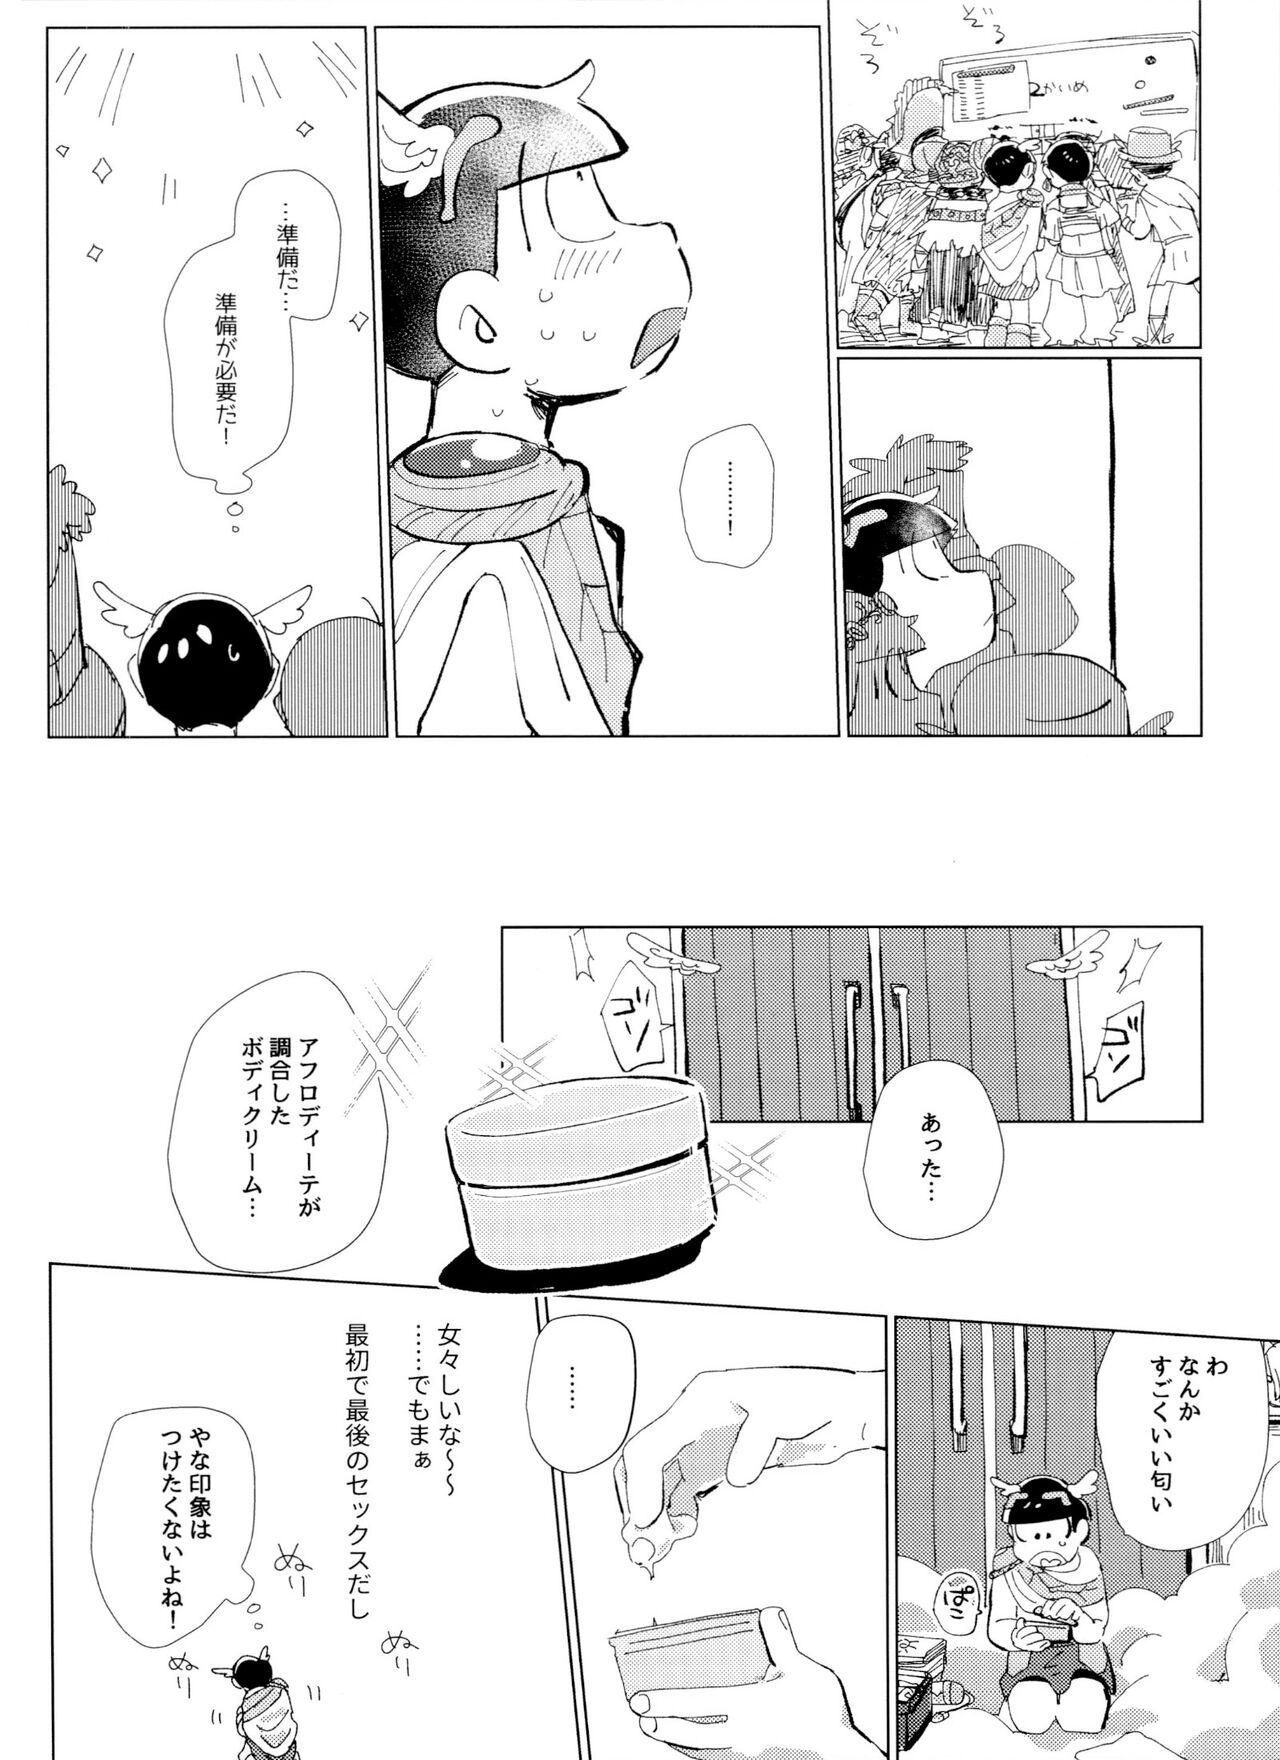 Upskirt [Handa gote sakka (handa)] Zeuapo-ko-tsukuri shinwa (Osomatsu-San) - Osomatsu san Analplay - Page 9